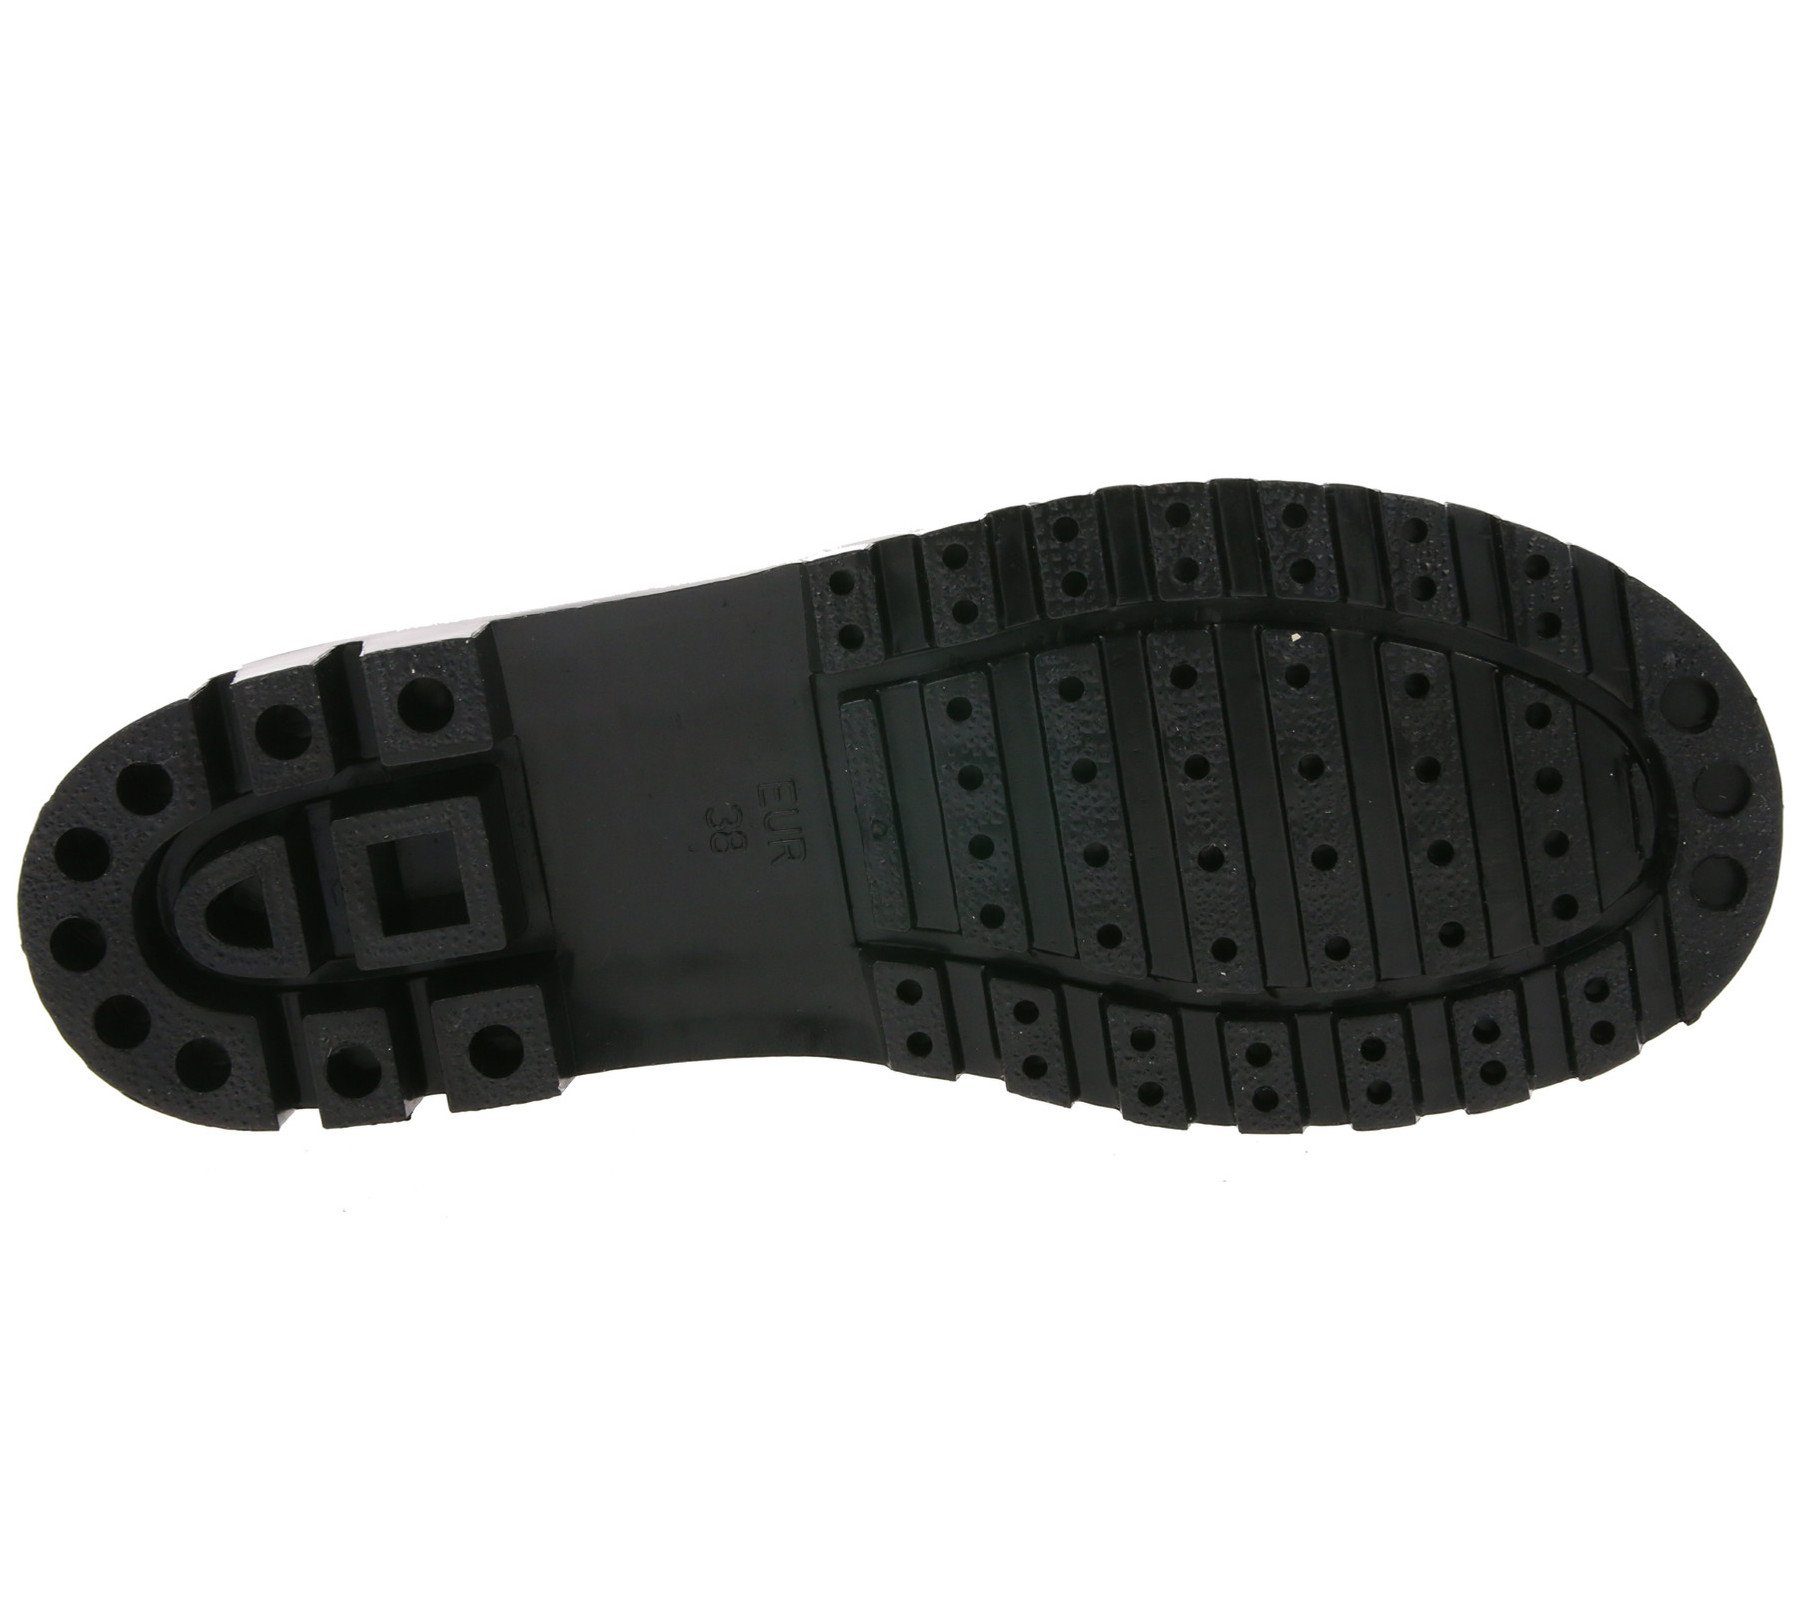 Schuhe Badeschuhe MTNG mtng Schuhe Strandschuhe elastische Damen Bade-Schuhe Schwimm-Schuhe Schwarz Badeschuh